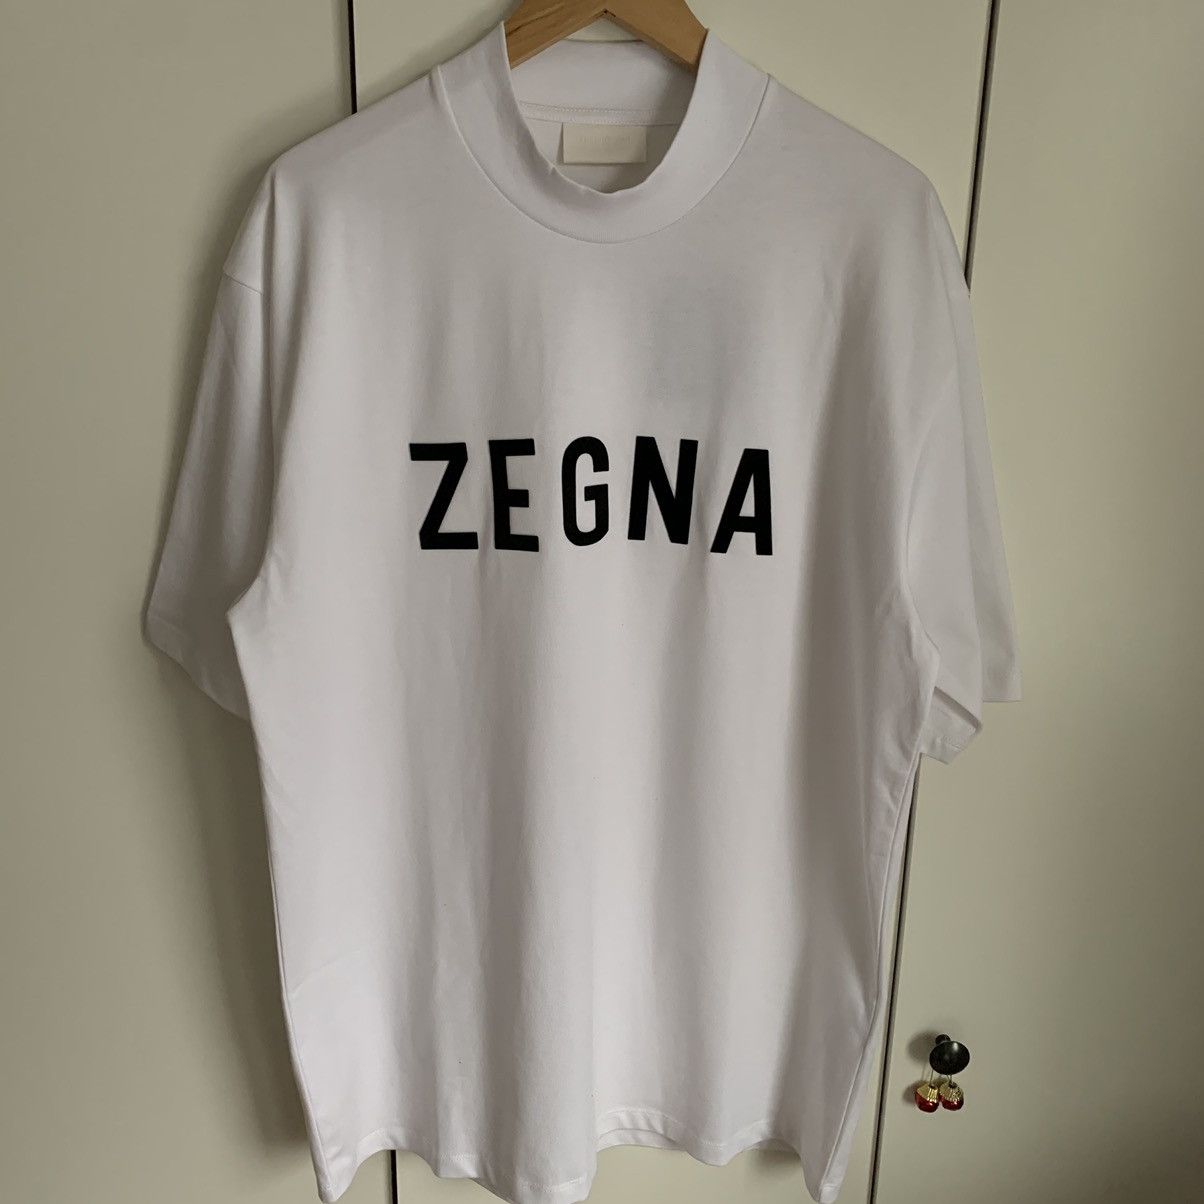 Zegna Off White Cotton T-Shirt